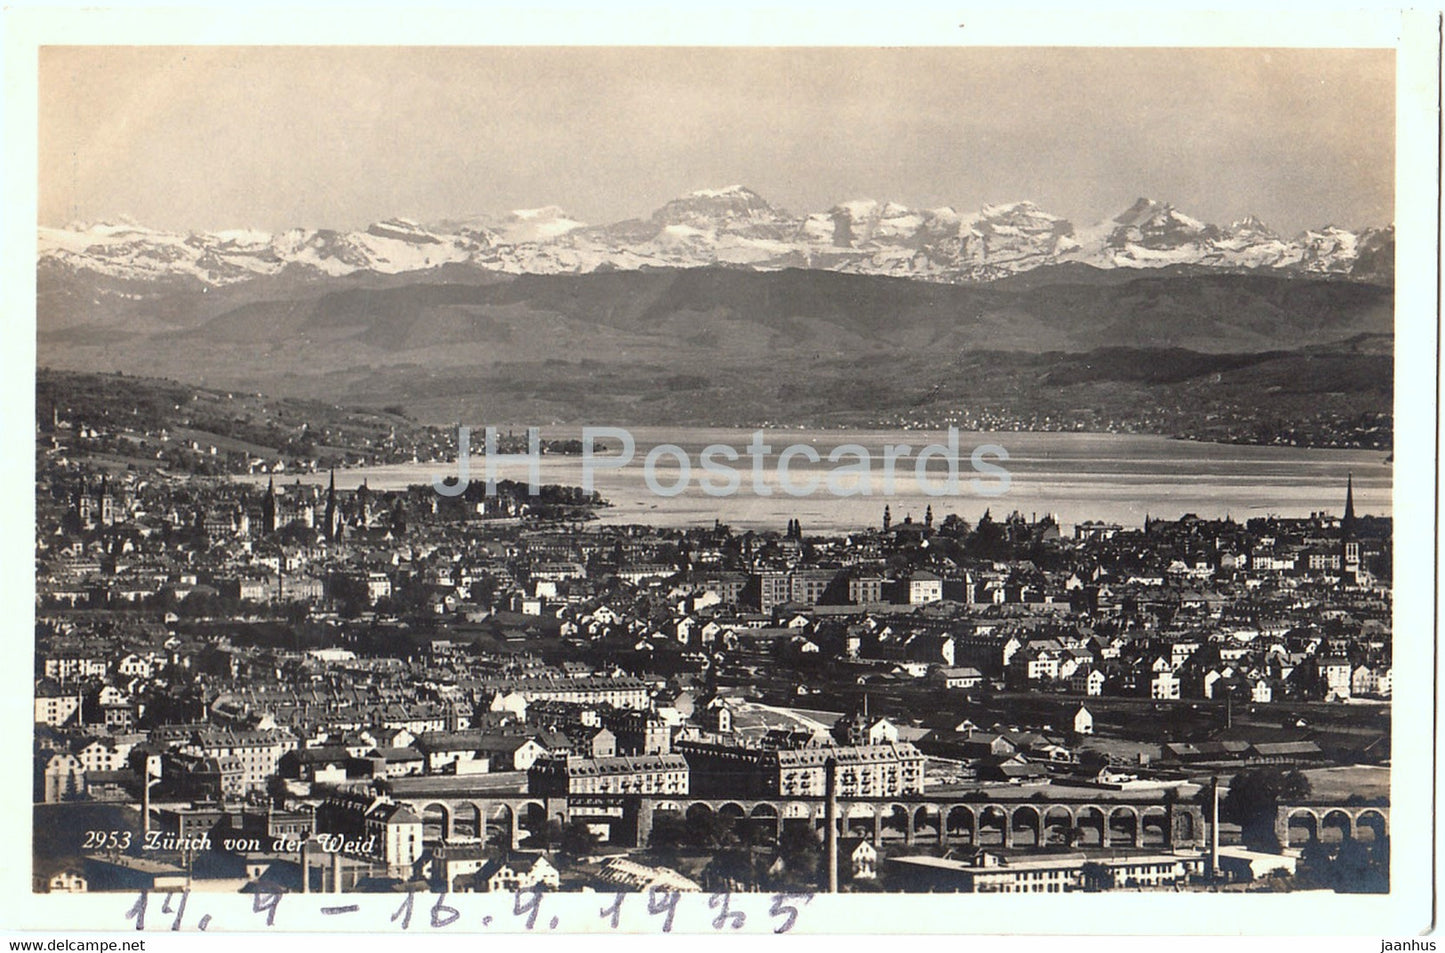 Zurich von der Weid - 2953 - old postcard - 1925 - Switzerland - used - JH Postcards